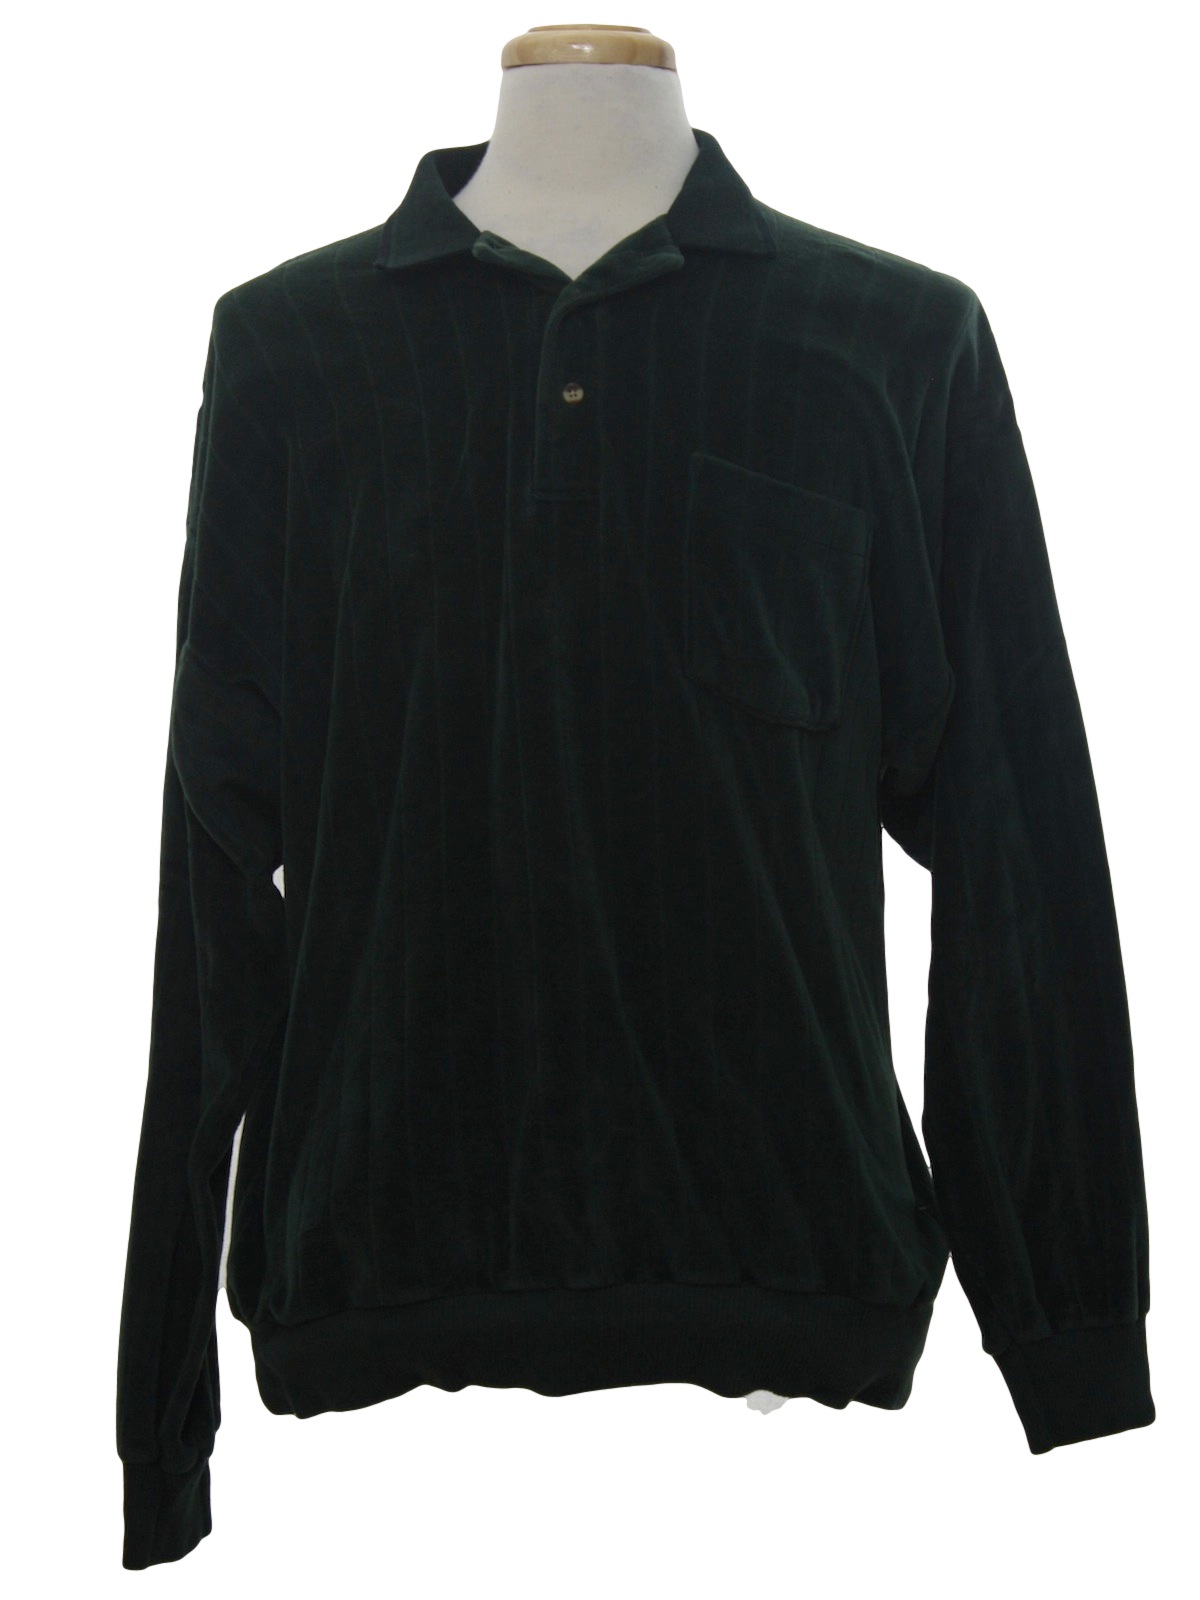 Retro 1980's Velour Shirt (Brett) : 80s -Brett- Mens deep forest green ...